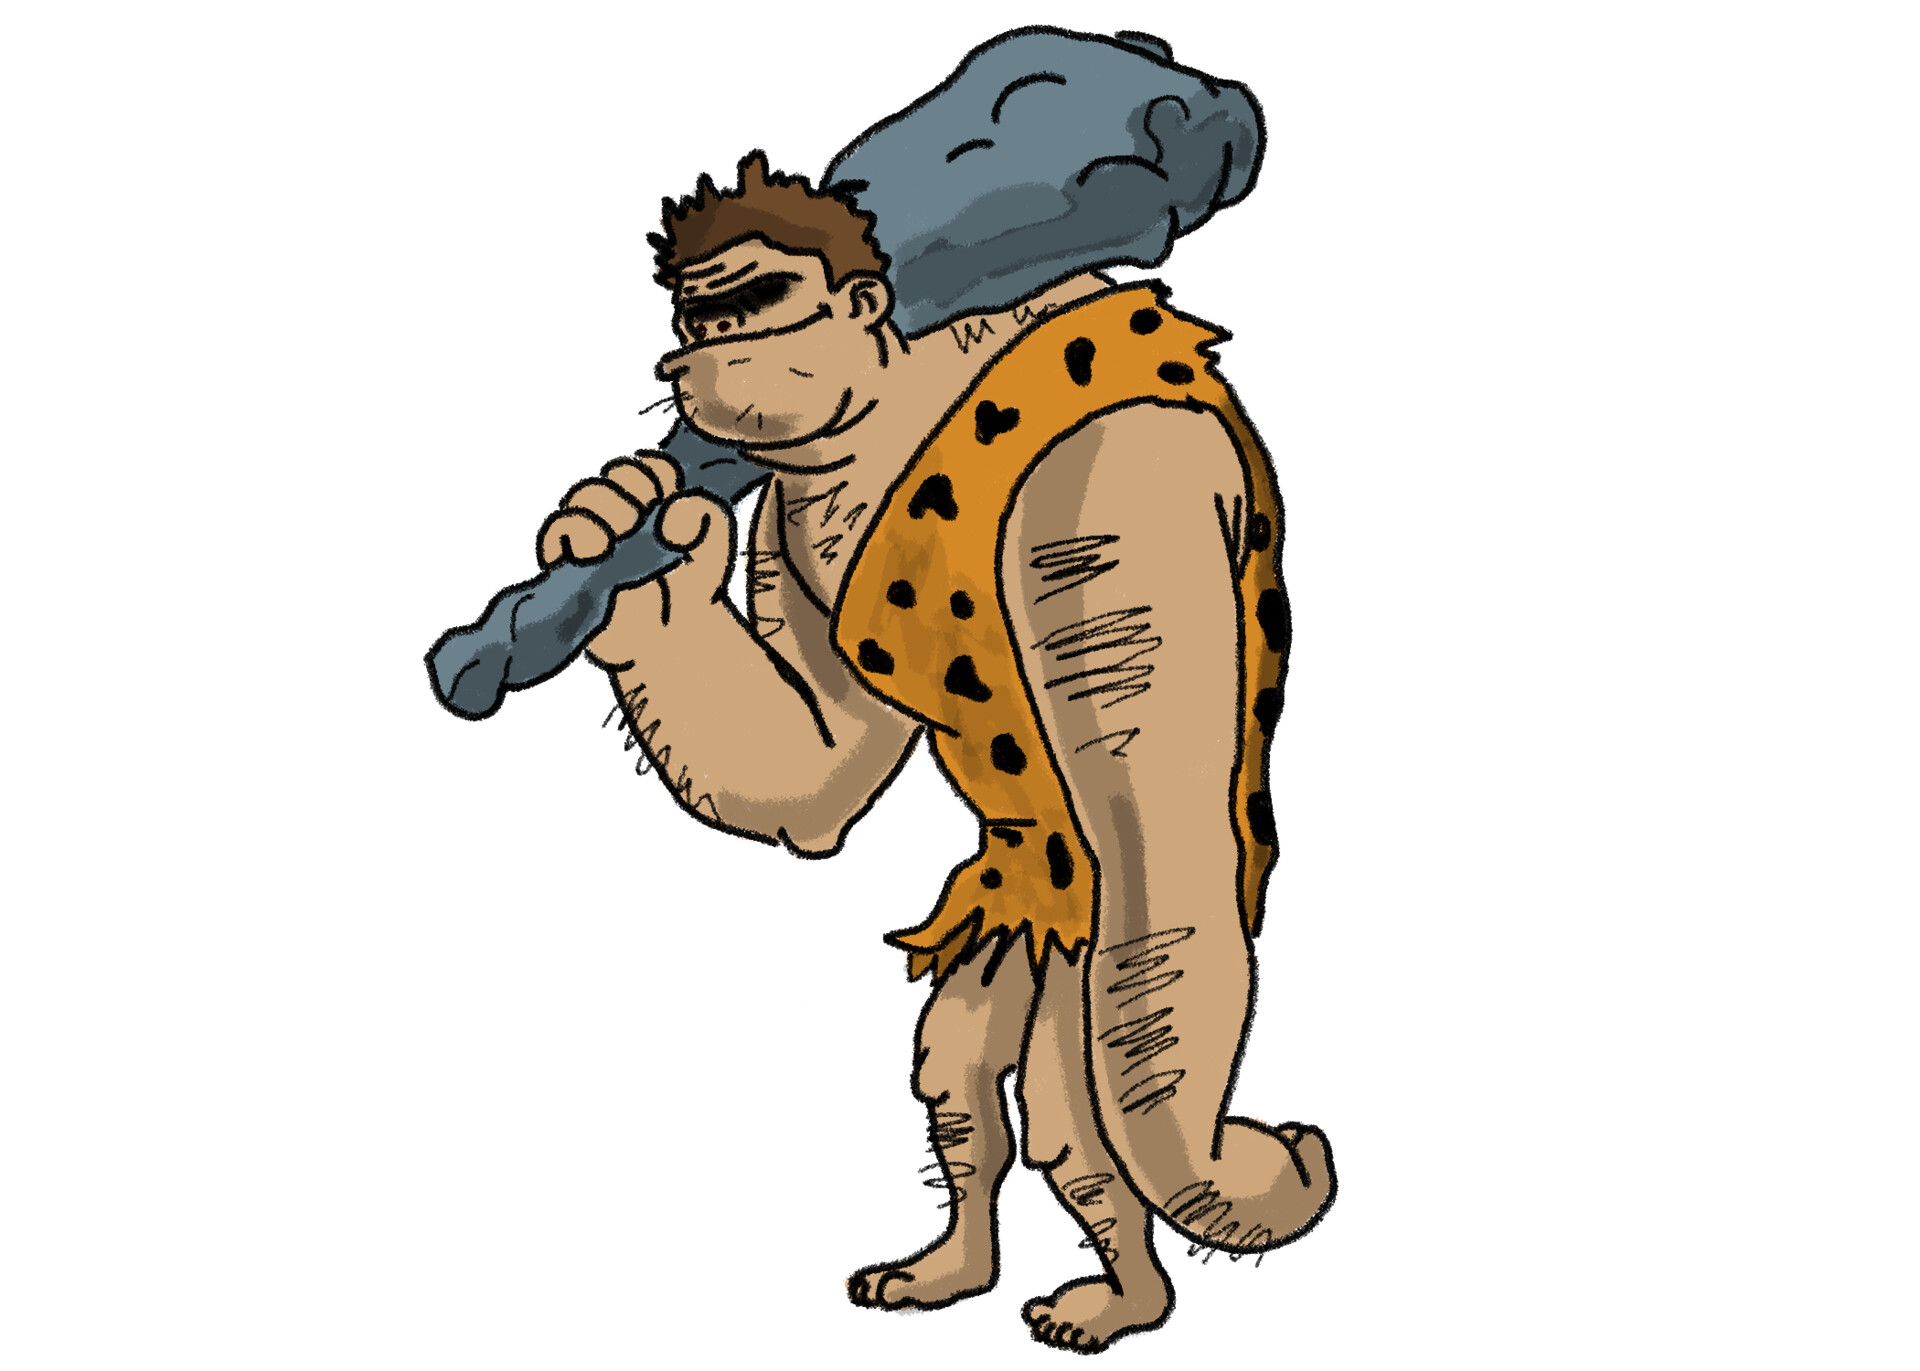 ArtStation - Caveman Cartoon